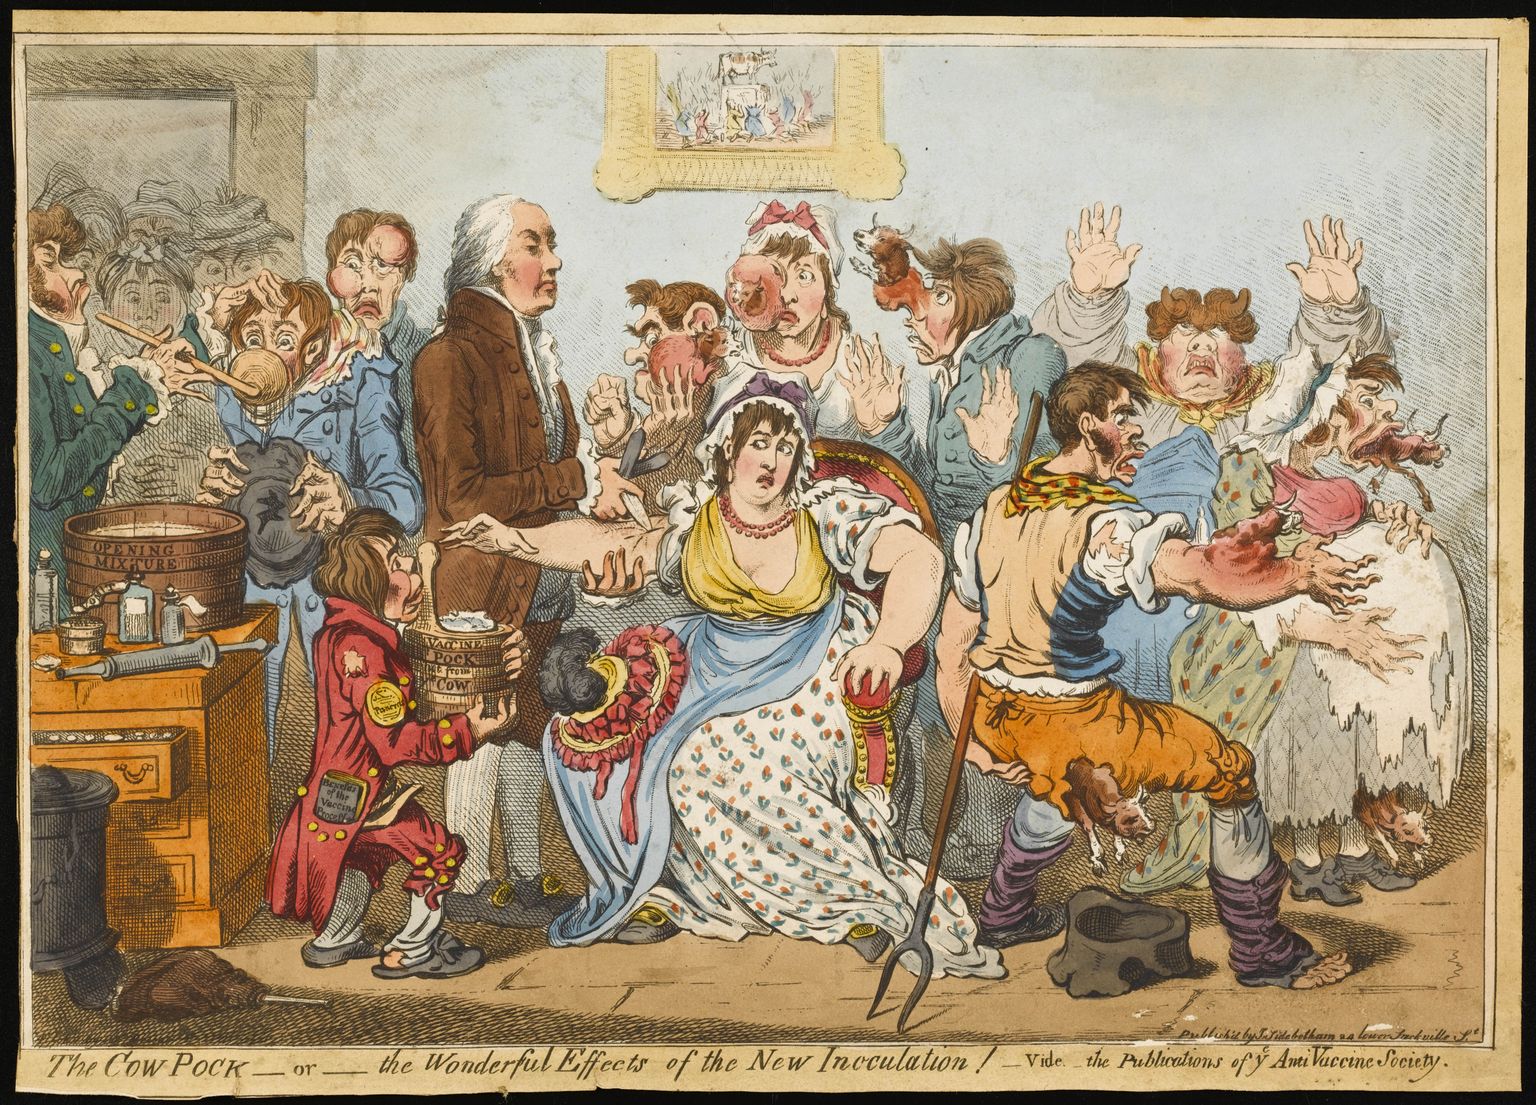 1802. aastast pärit briti satiiriku James Gillray vaktsineerimisvastane karikatuur. Vaktsineerimisvastaste ühingu häälekandjas ilmunud pilapildi kesksel kohal kaitsepookimisega tegelev mees meenutab Edward Jennerit, kes esimesena teaduslikult uuris ja kirjeldas vaktsineerimist.